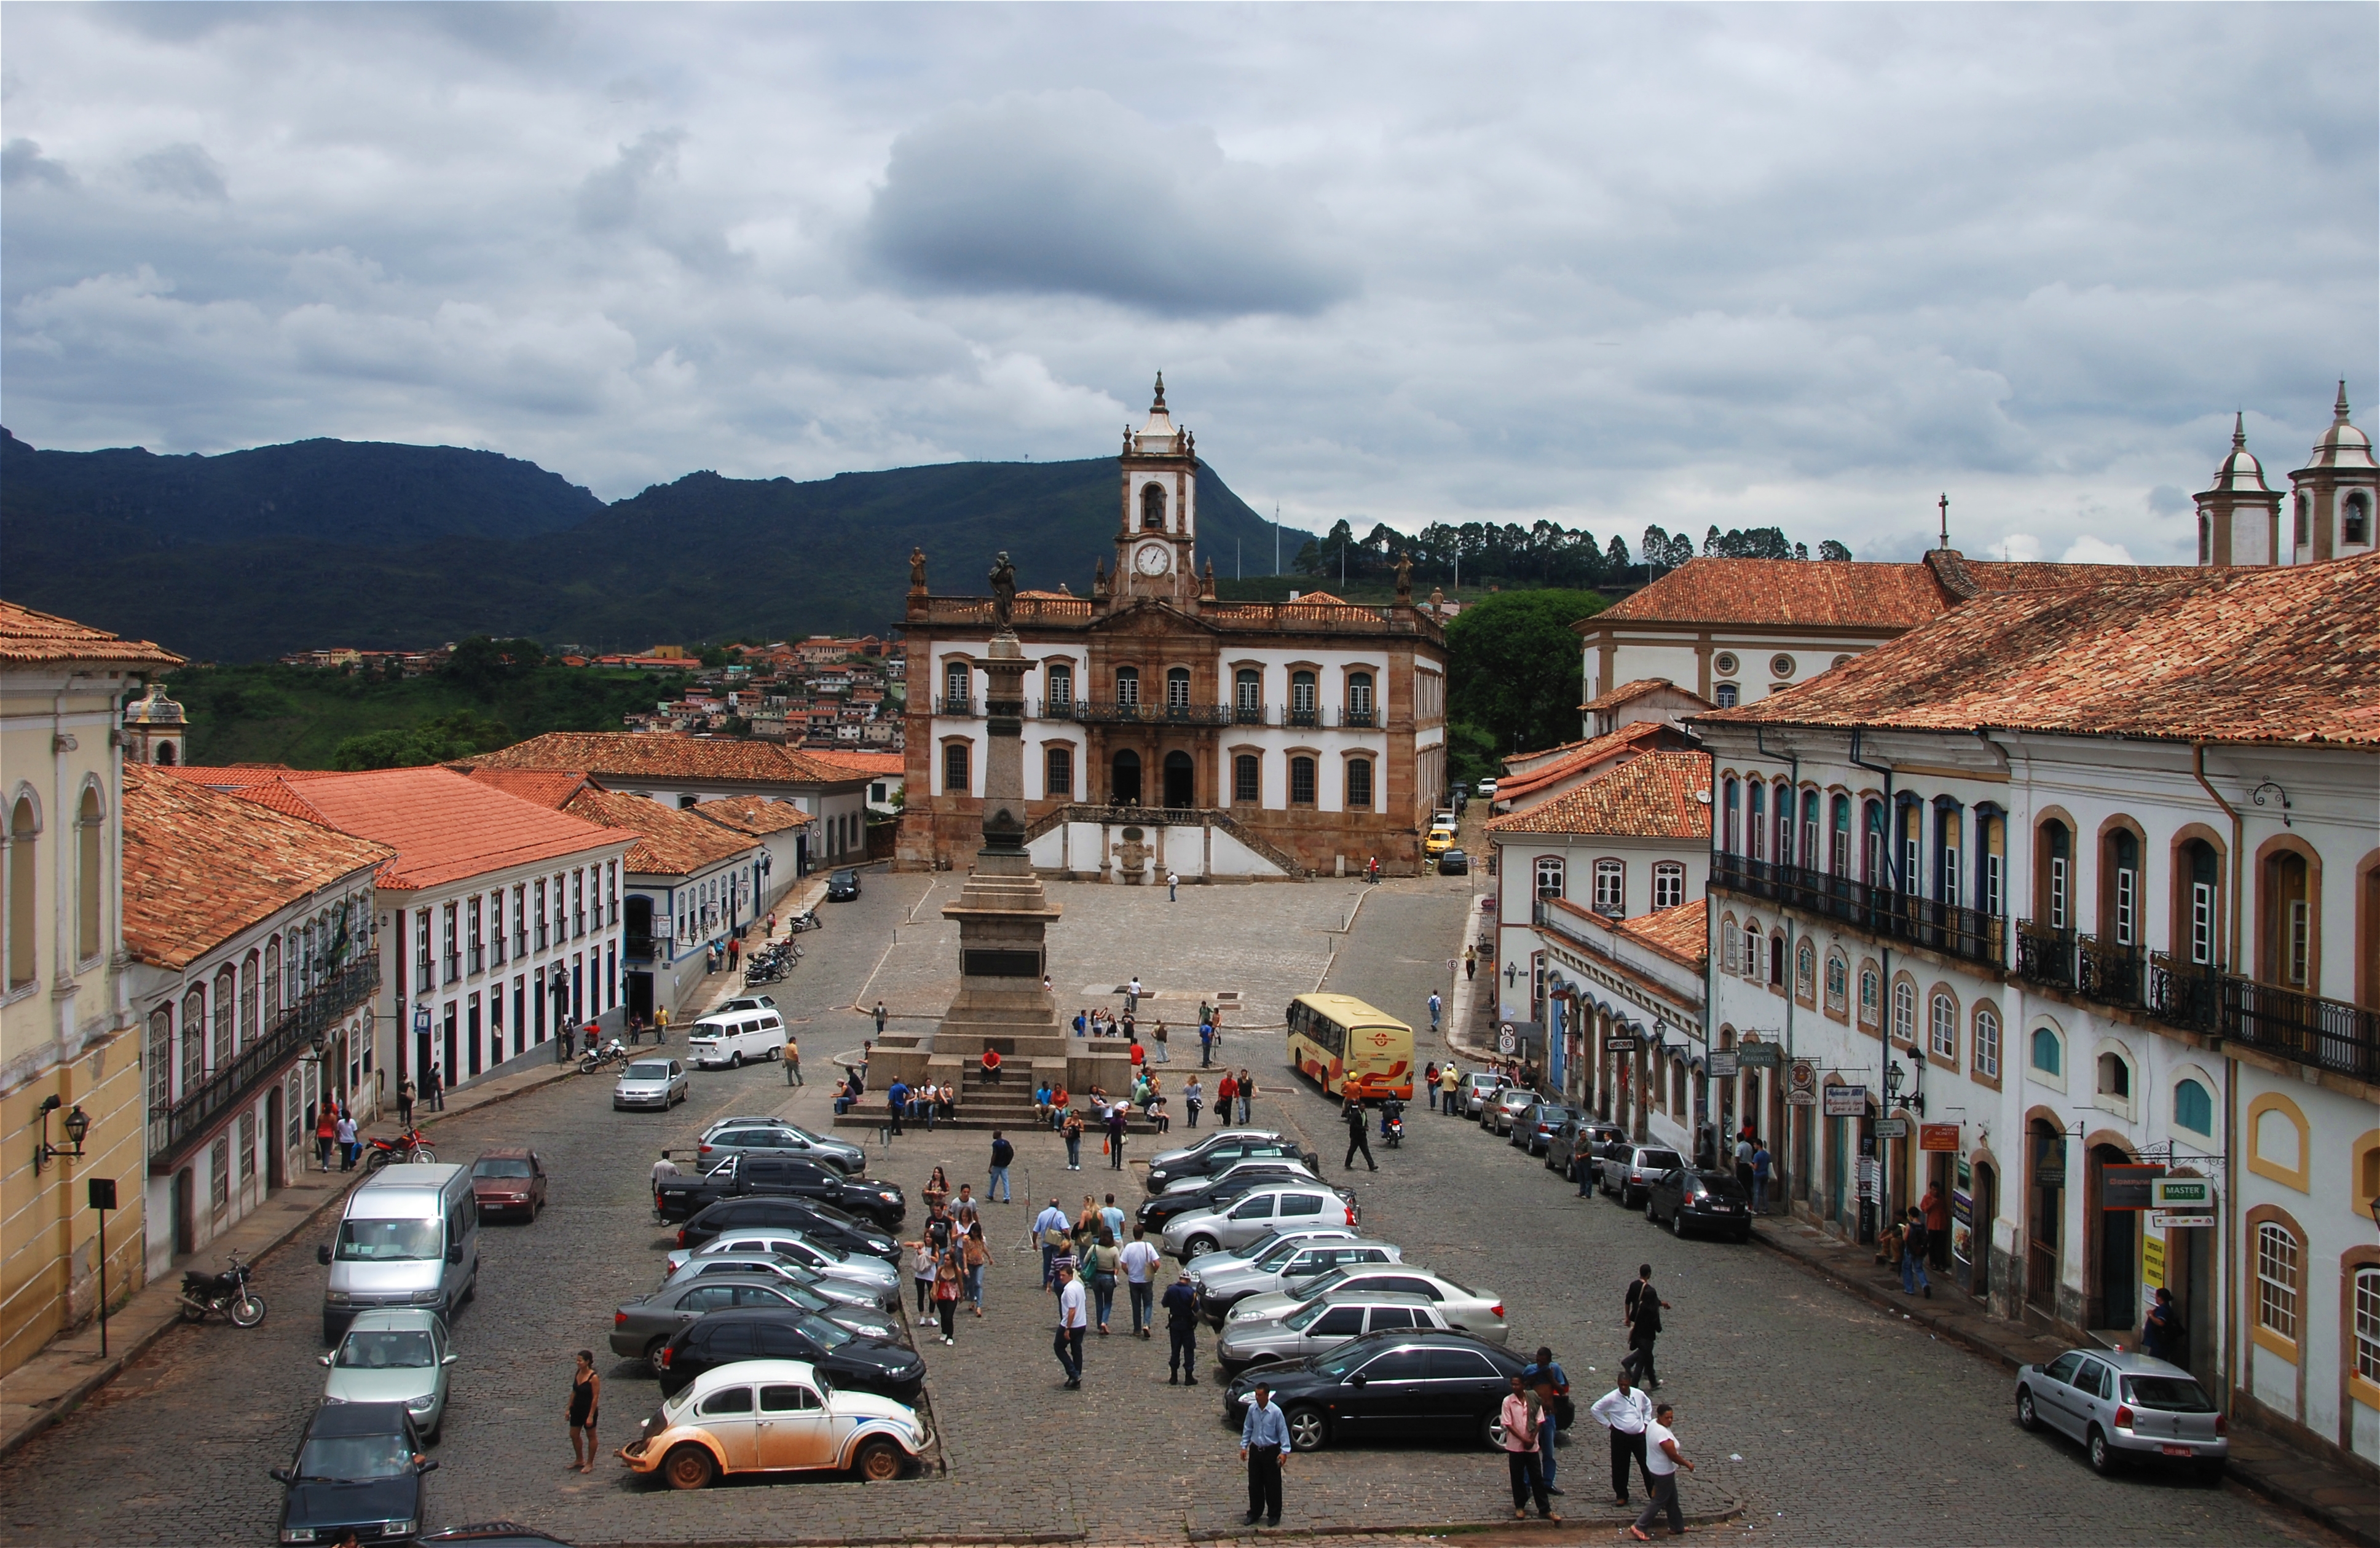 Ouro Preto city in Brazil